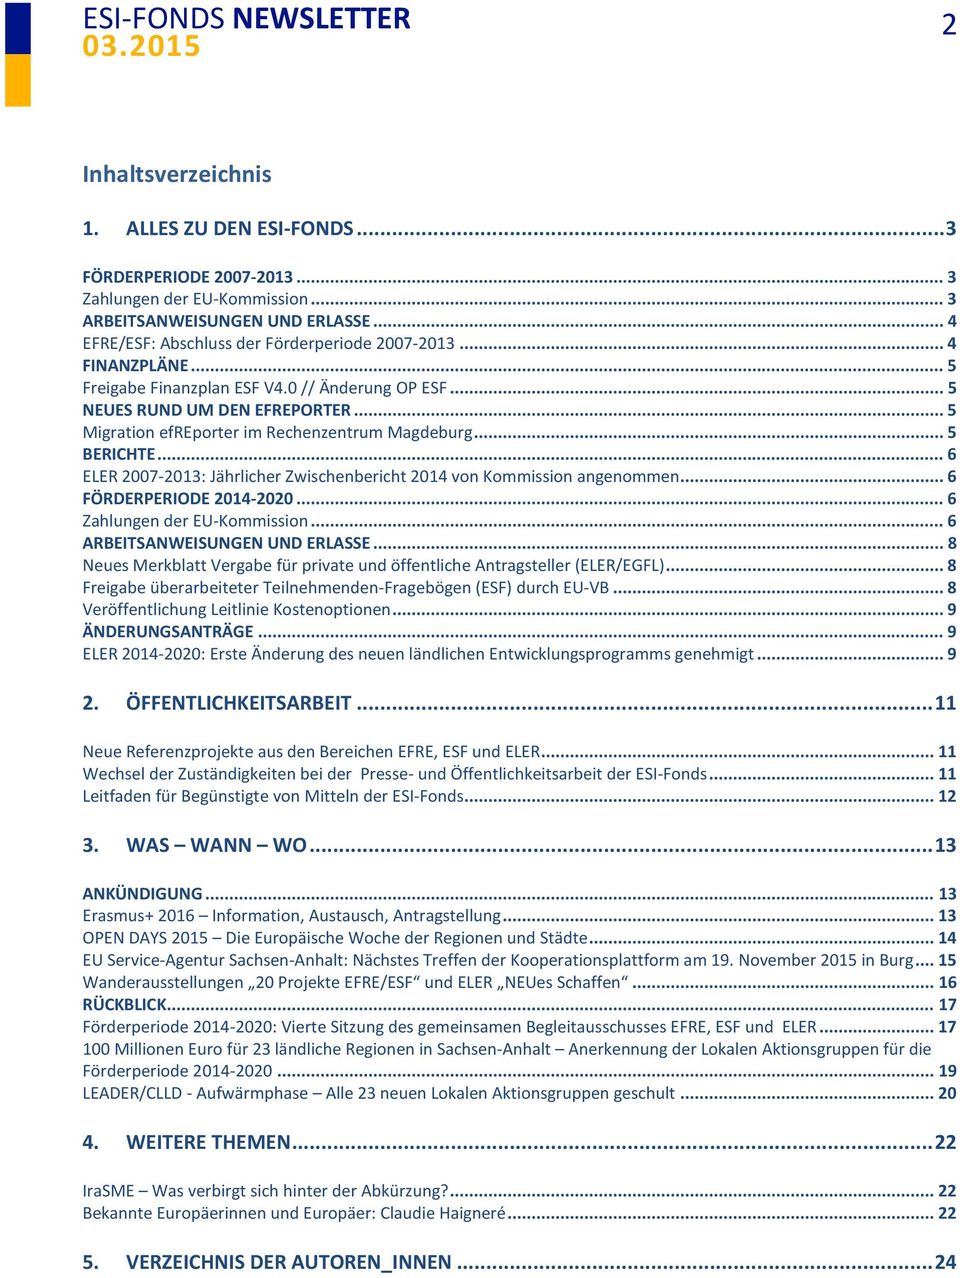 .. 6 ELER 2007-2013: Jährlicher Zwischenbericht 2014 von Kommission angenommen... 6 FÖRDERPERIODE 2014-2020... 6 Zahlungen der EU-Kommission... 6 ARBEITSANWEISUNGEN UND ERLASSE.